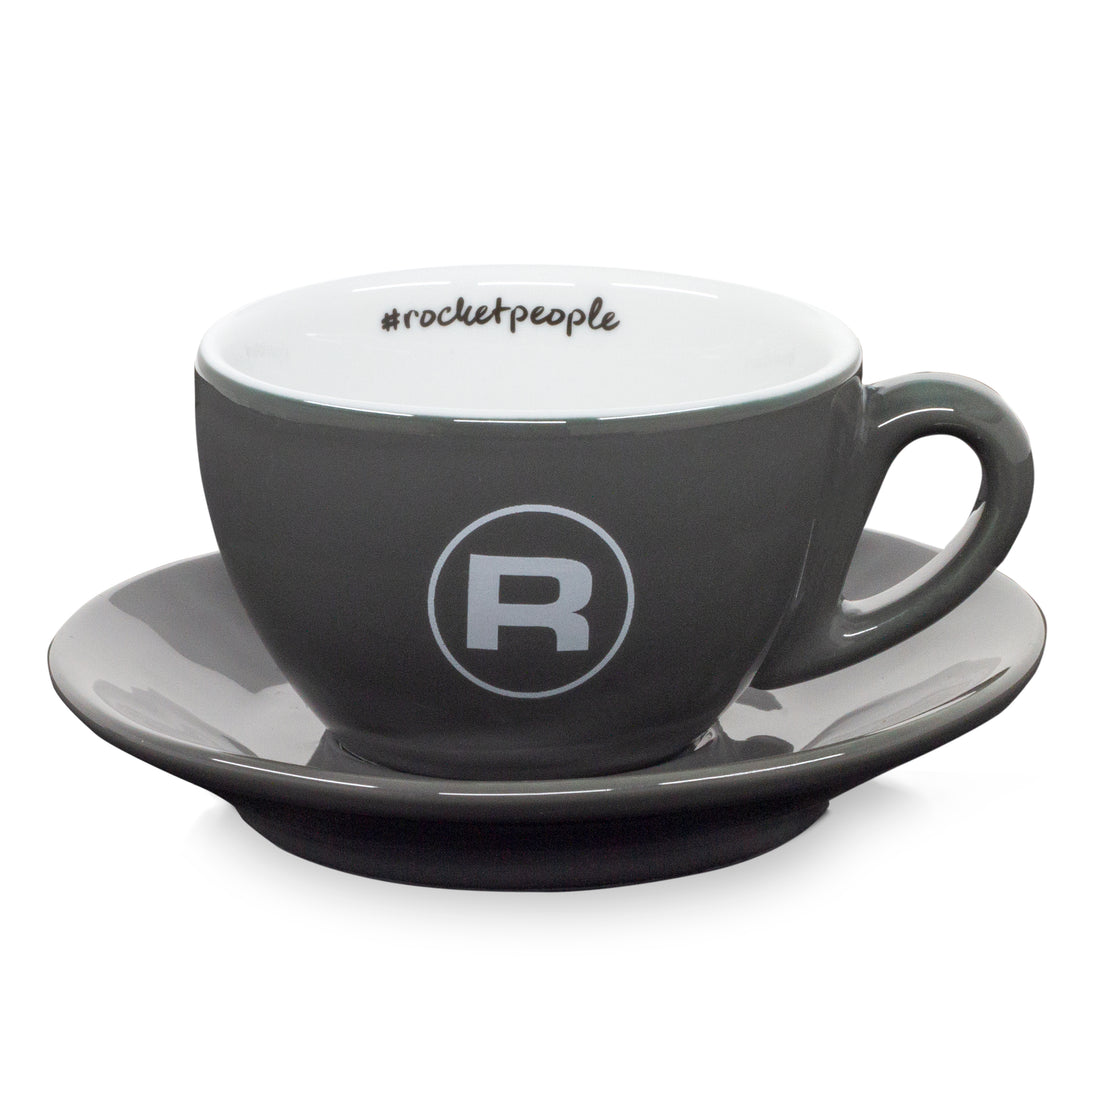 Rocket Espresso 6 Piece Cappuccino Cup and Saucer Set - Grey